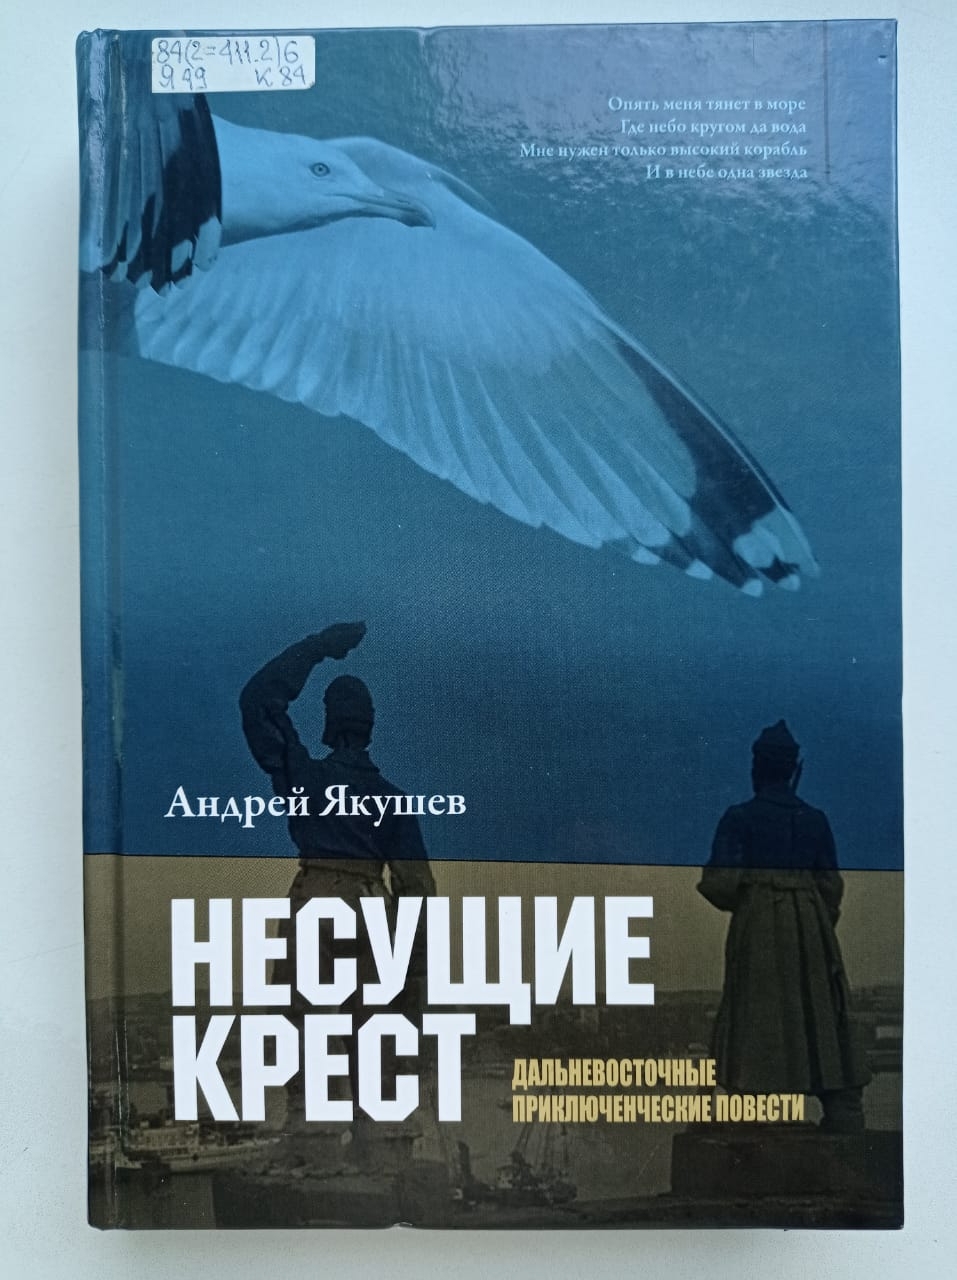 Андрей Якушев, "Несущие крест"